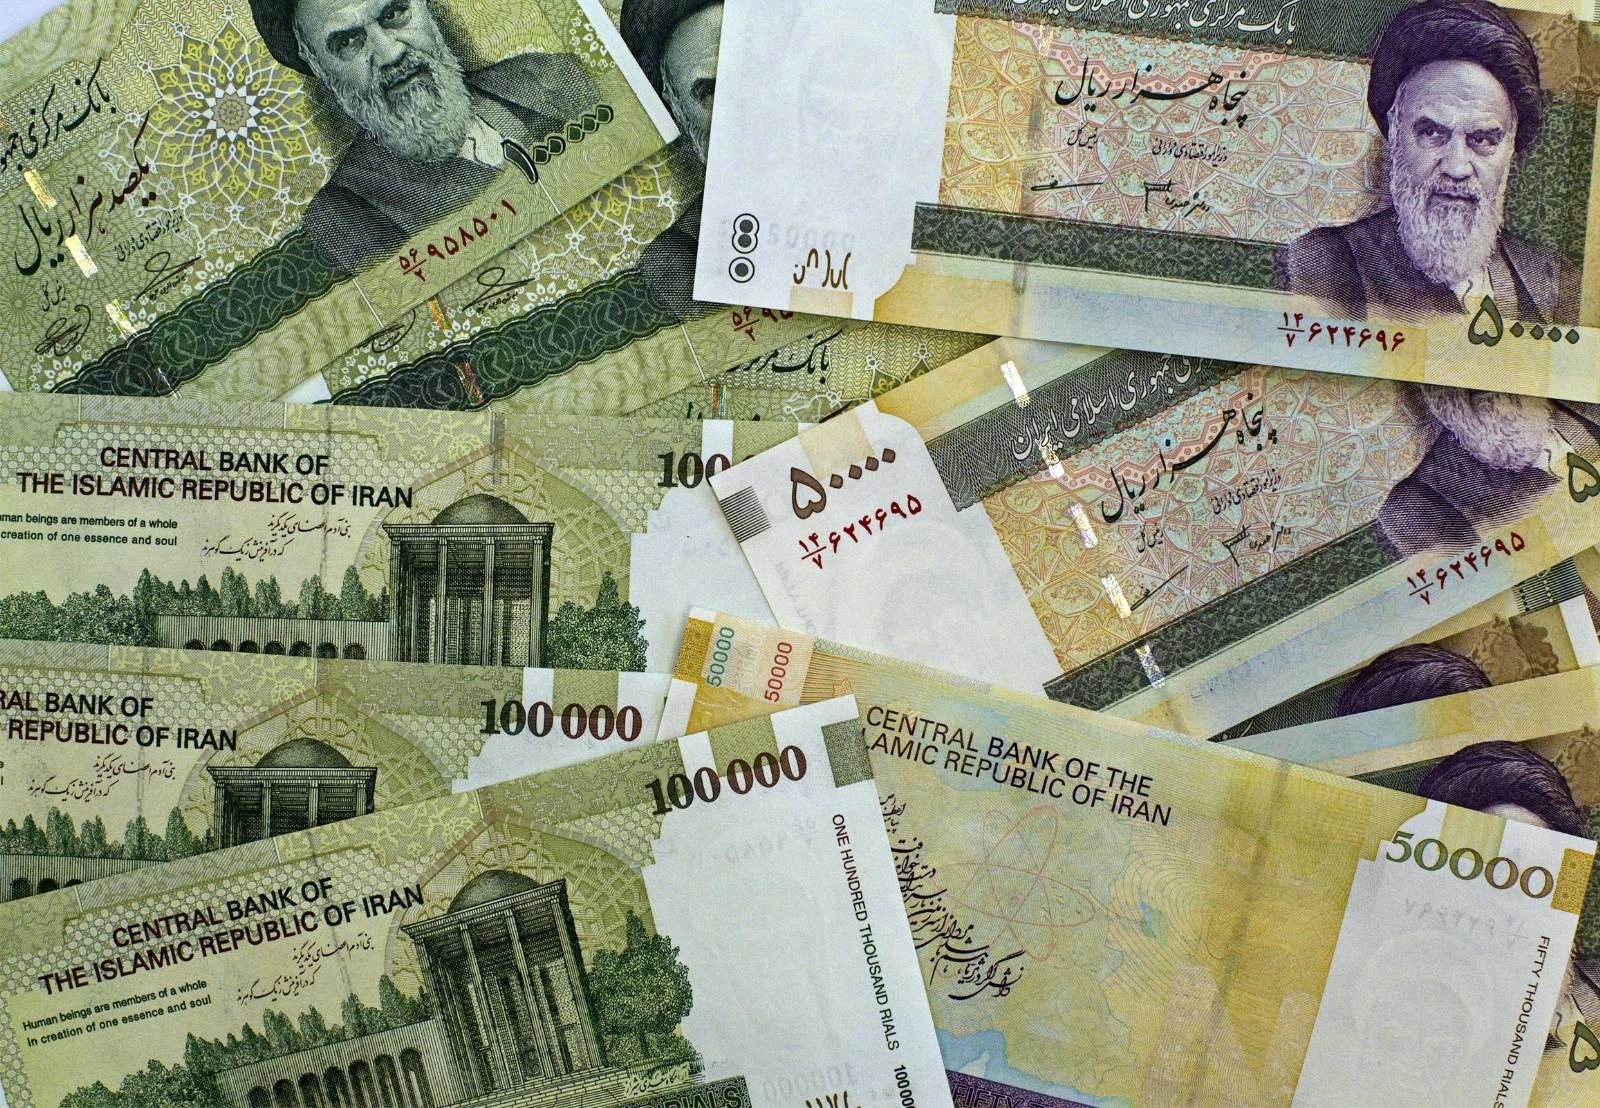 В Иране национальная валюта является риал